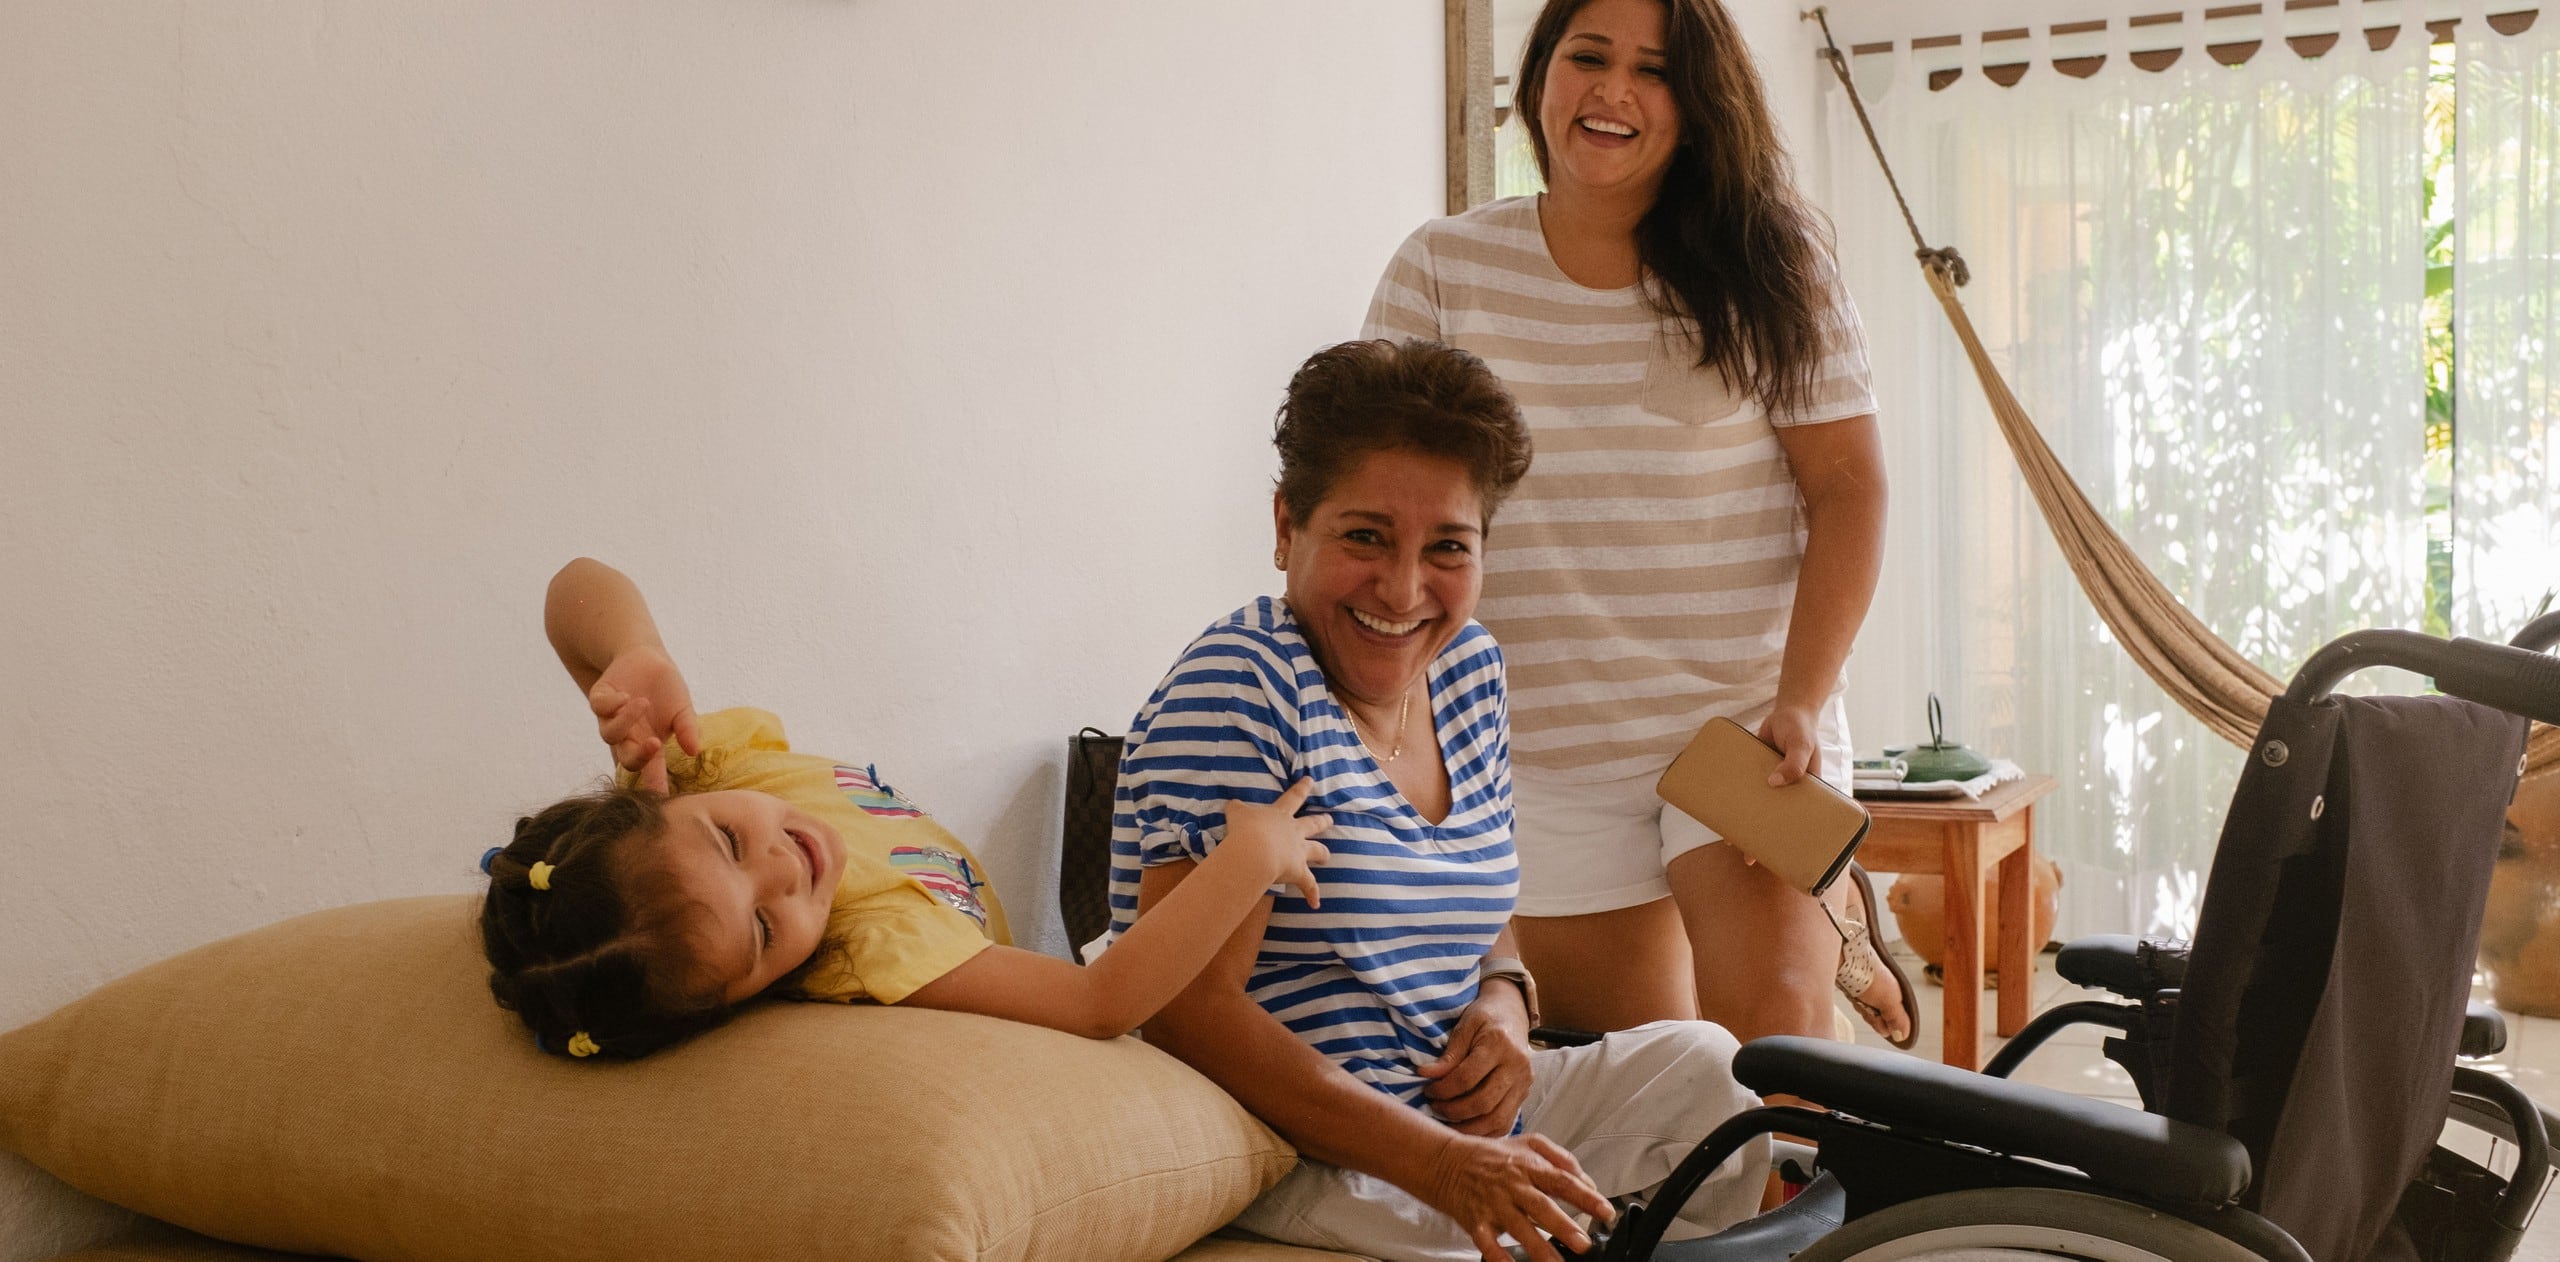 Tres generaciones de una familia sonríen y se ríen en un alojamiento accesible de Airbnb. Frente a ellos, la persona de mayor edad está sentada en una silla de ruedas.